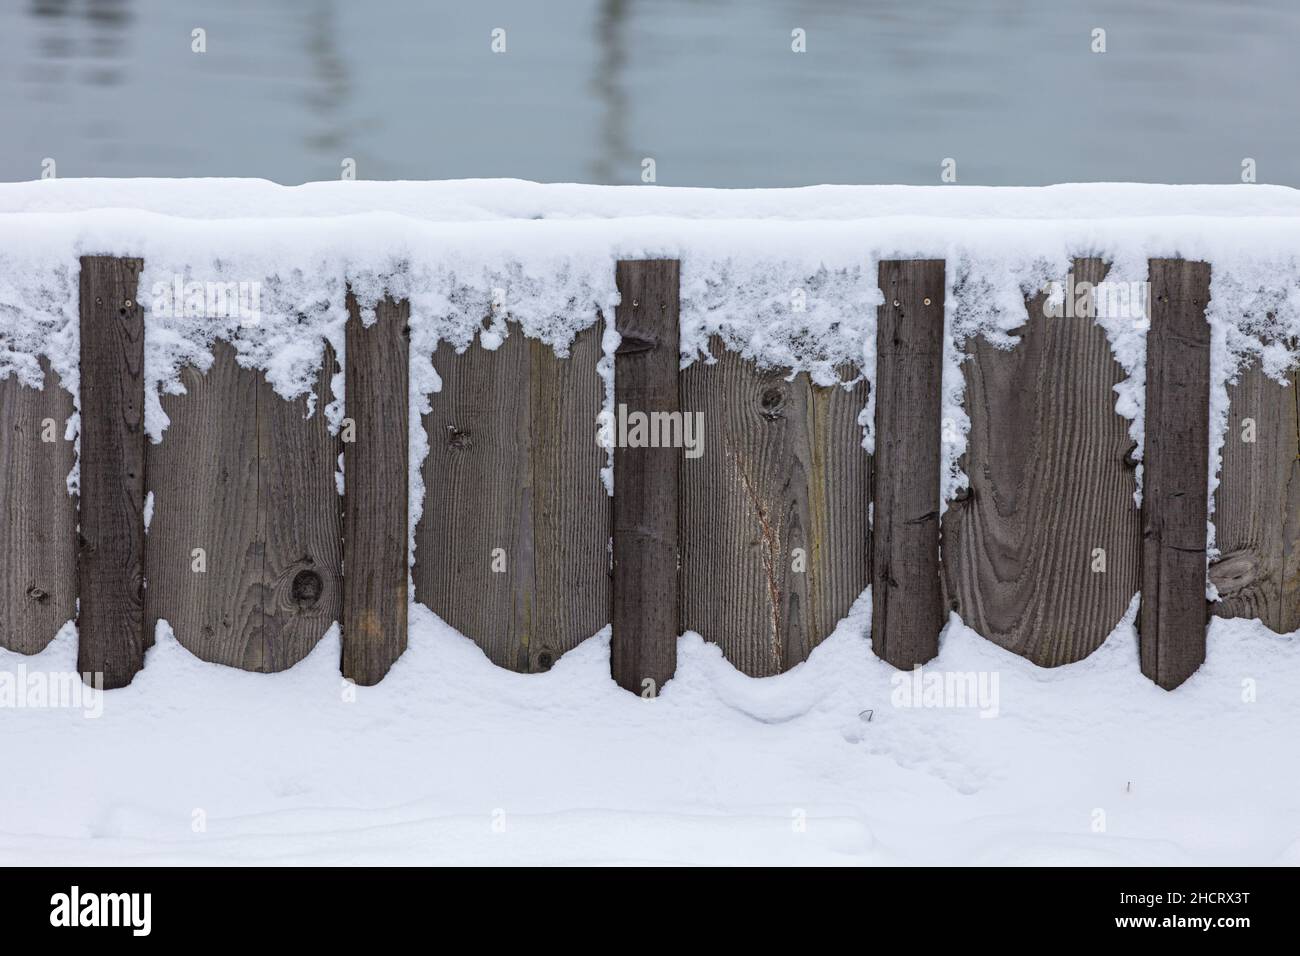 Immagine astratta di una barriera di legno contro le alluvioni con neve a Steveston British Columbia Canada Foto Stock